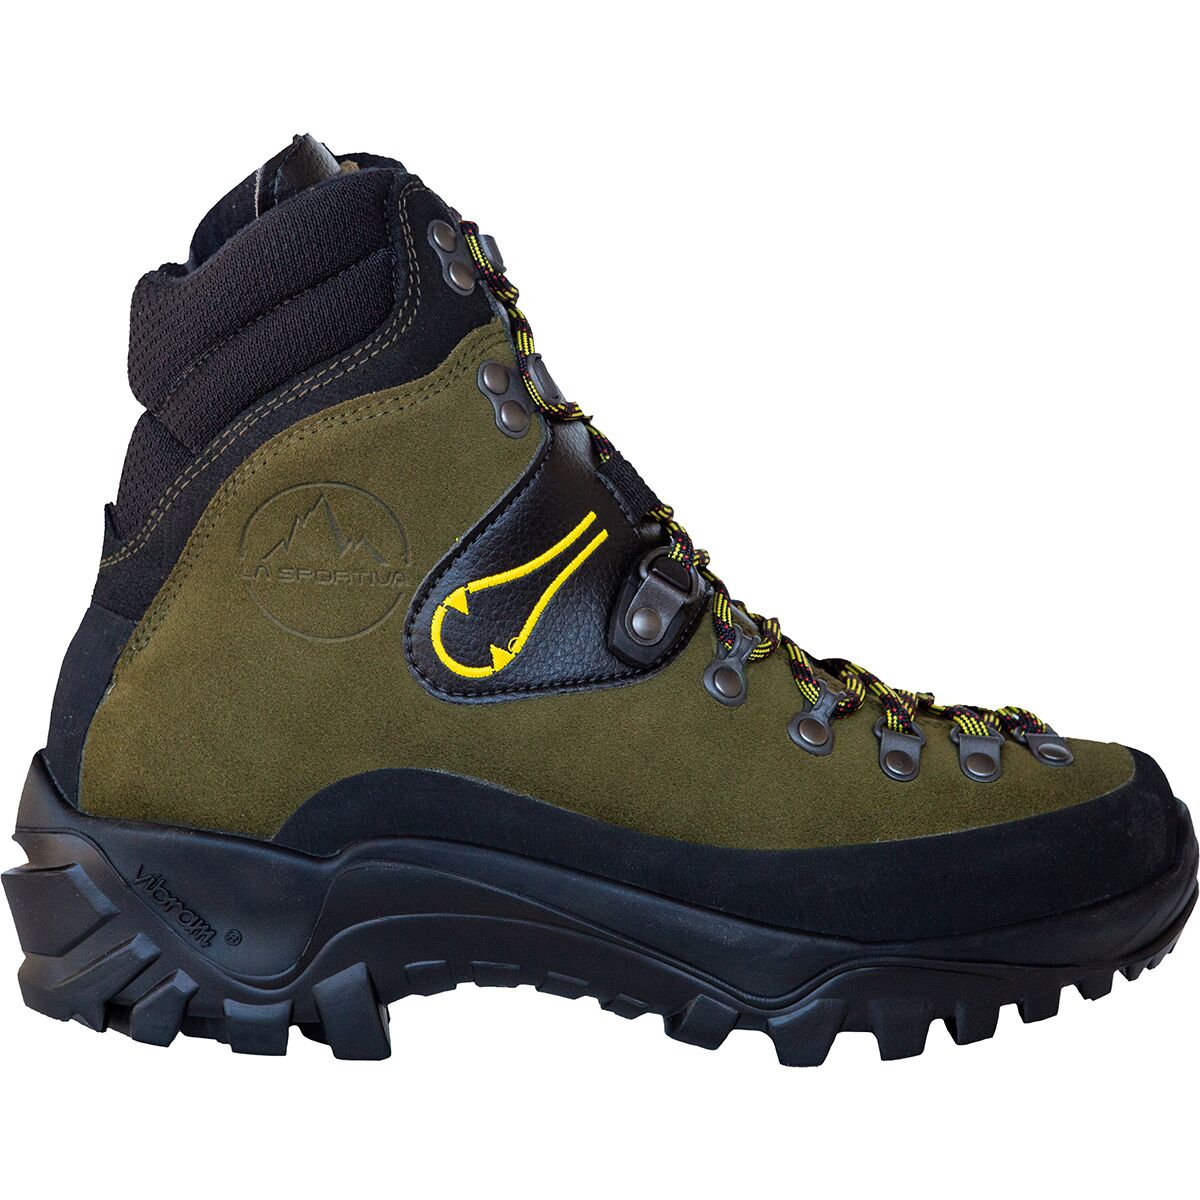 Karakorum Mountaineering Boots - Women